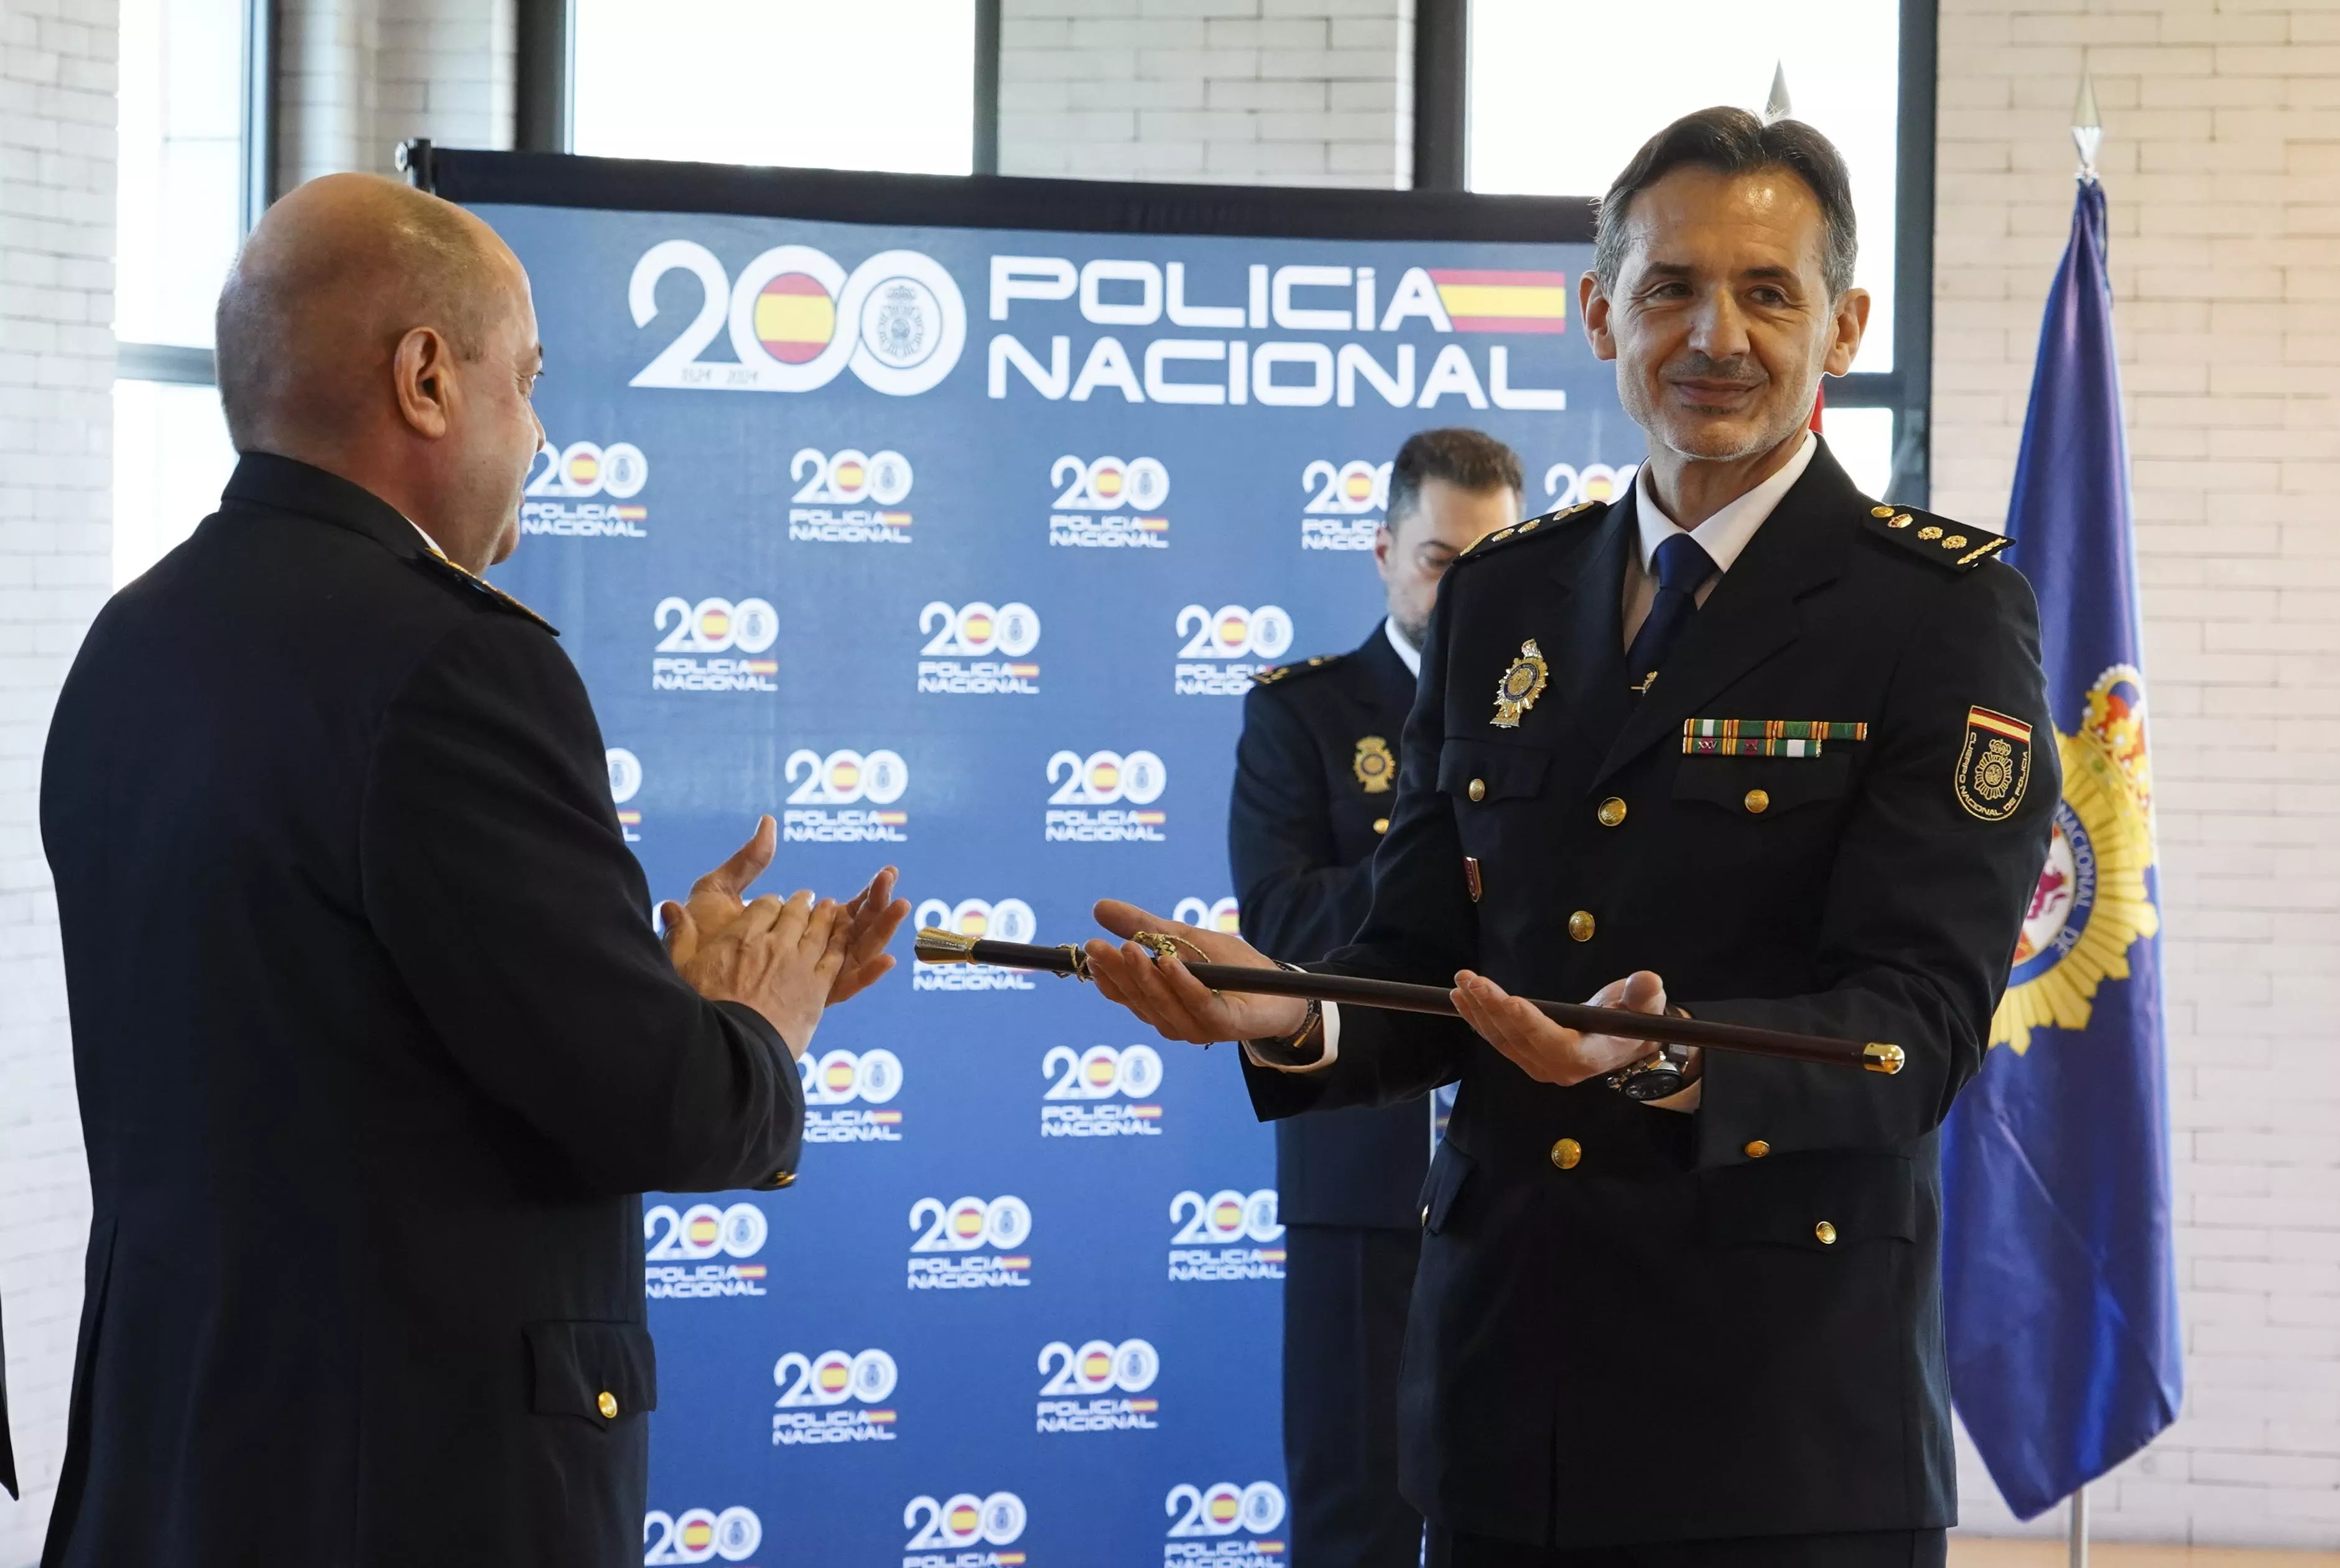 El comisario local de Policía Nacional en Ponferrada, Roberto González de Julián (D), durante el acto de toma de posesión de su cargo